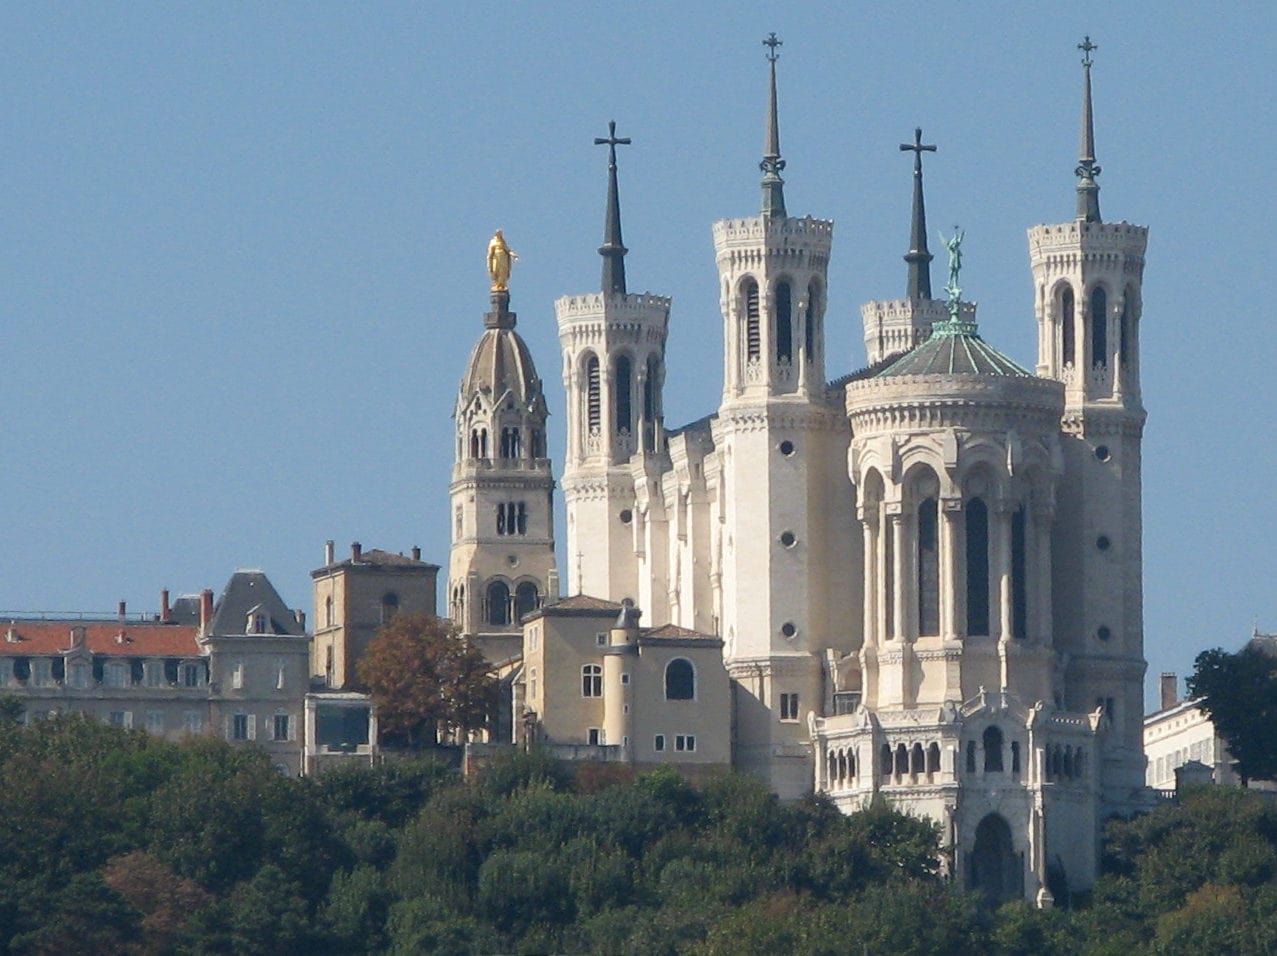 Abus sexuels : sous pression, le diocèse de Lyon communique sur 4 prêtres relevés de leur ministère